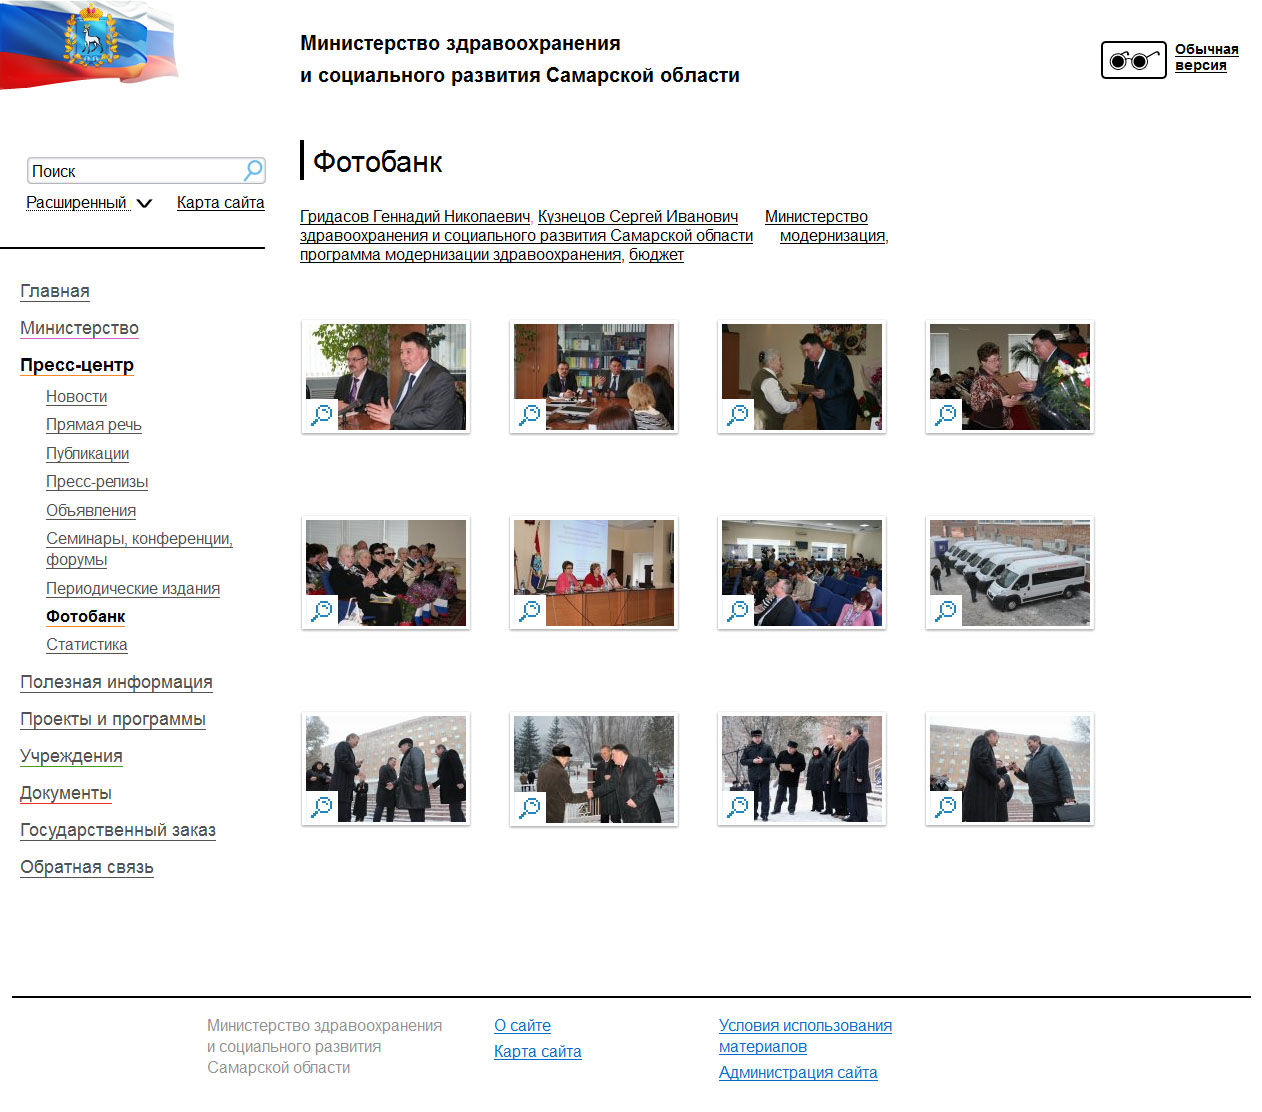 сайт министерства здравоохранения  и социального развития  самарской области